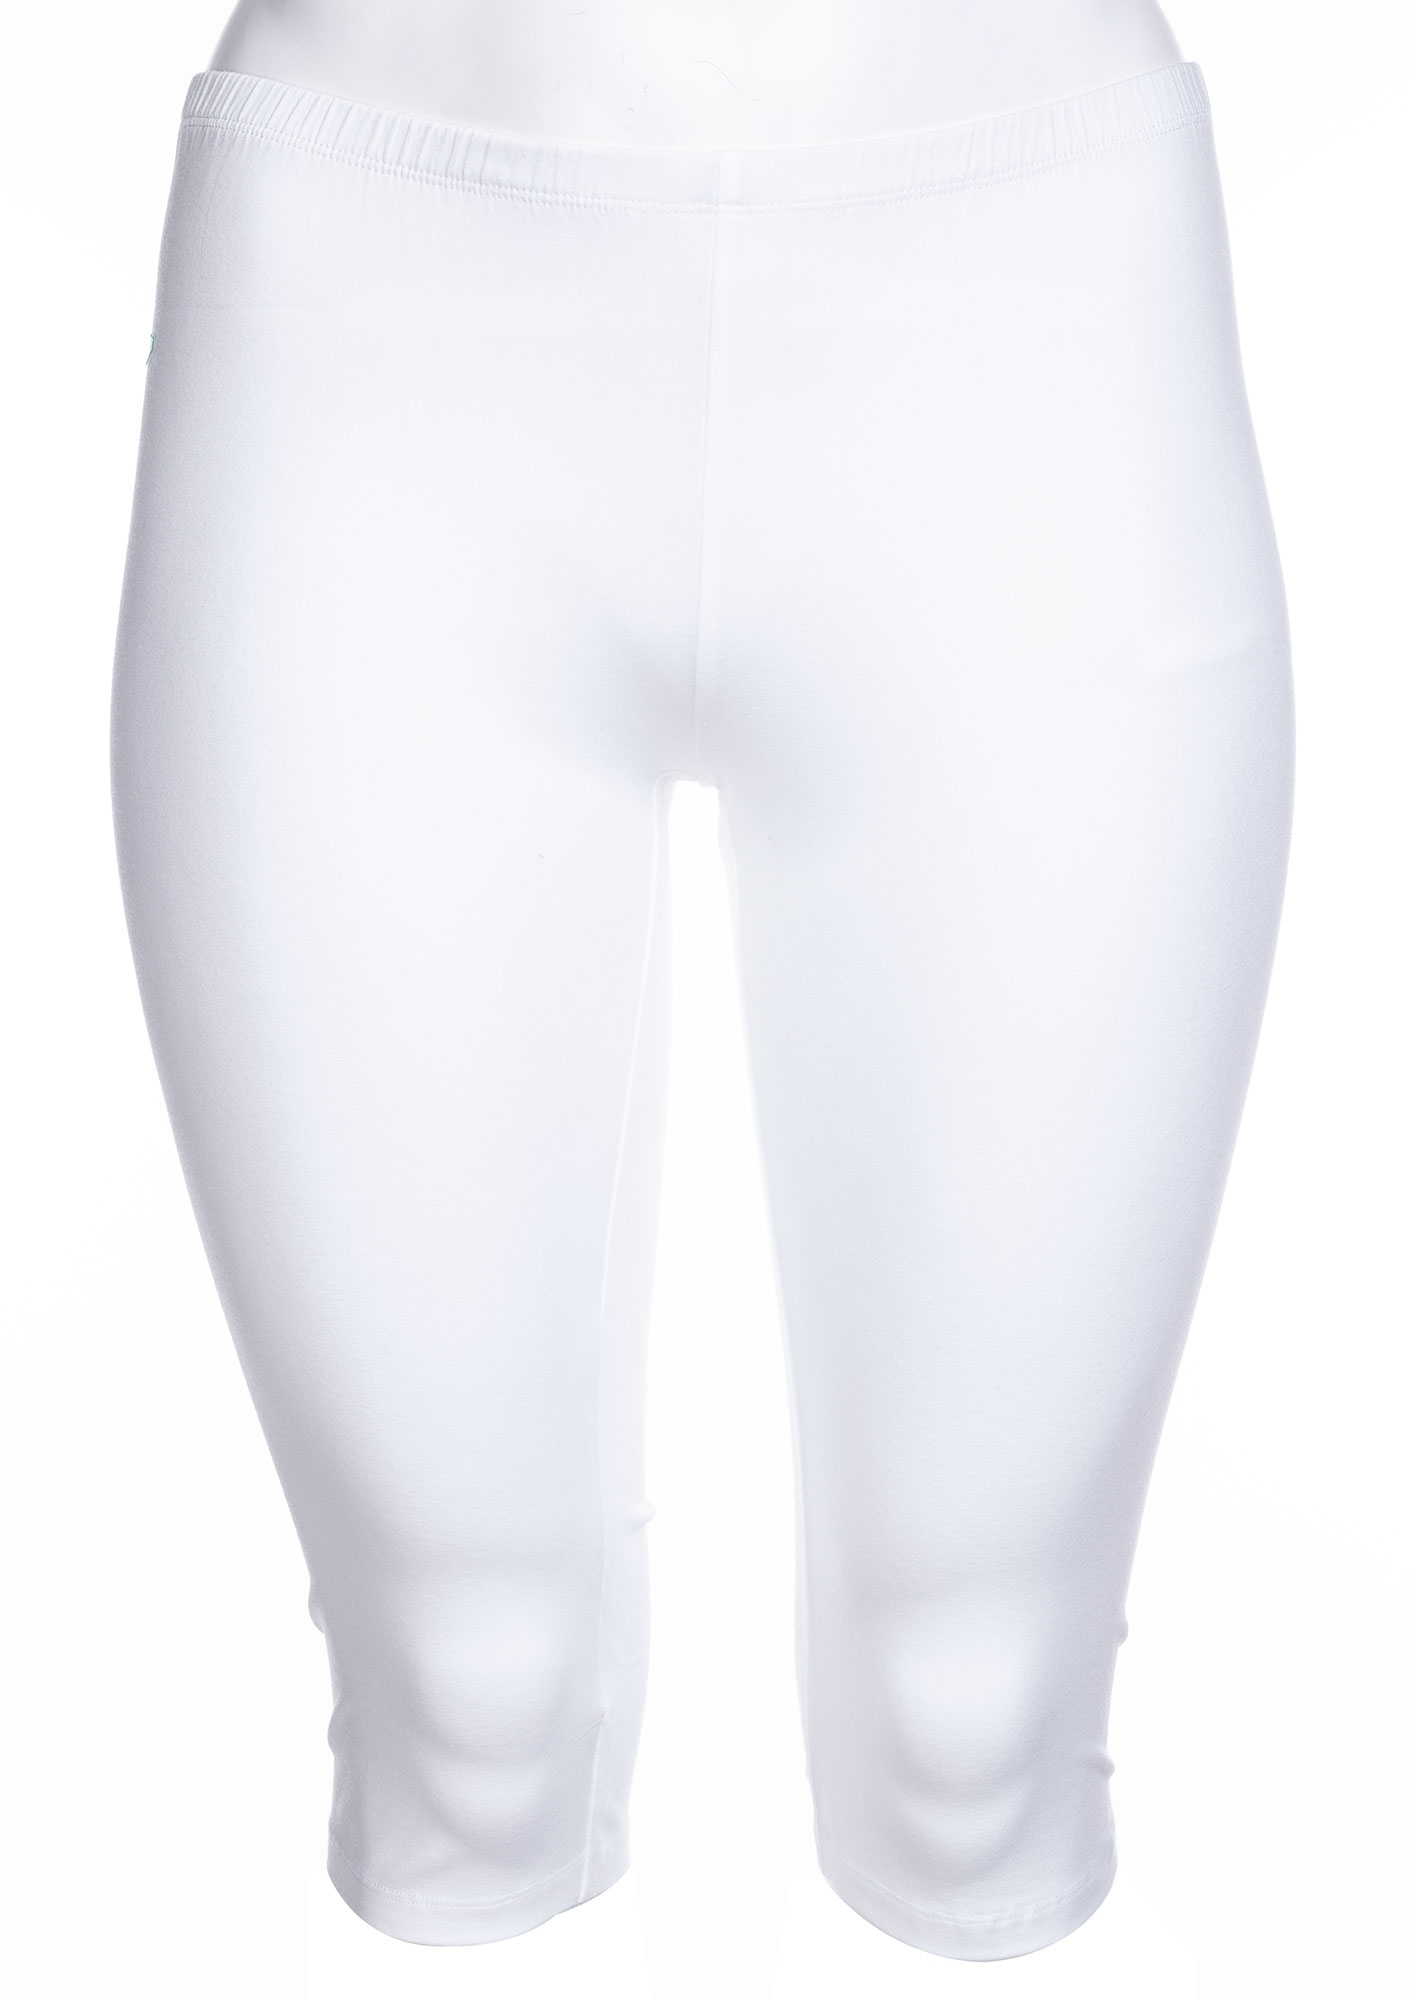 KANT - Hvite capri leggings med rynke-effekt fra Zhenzi